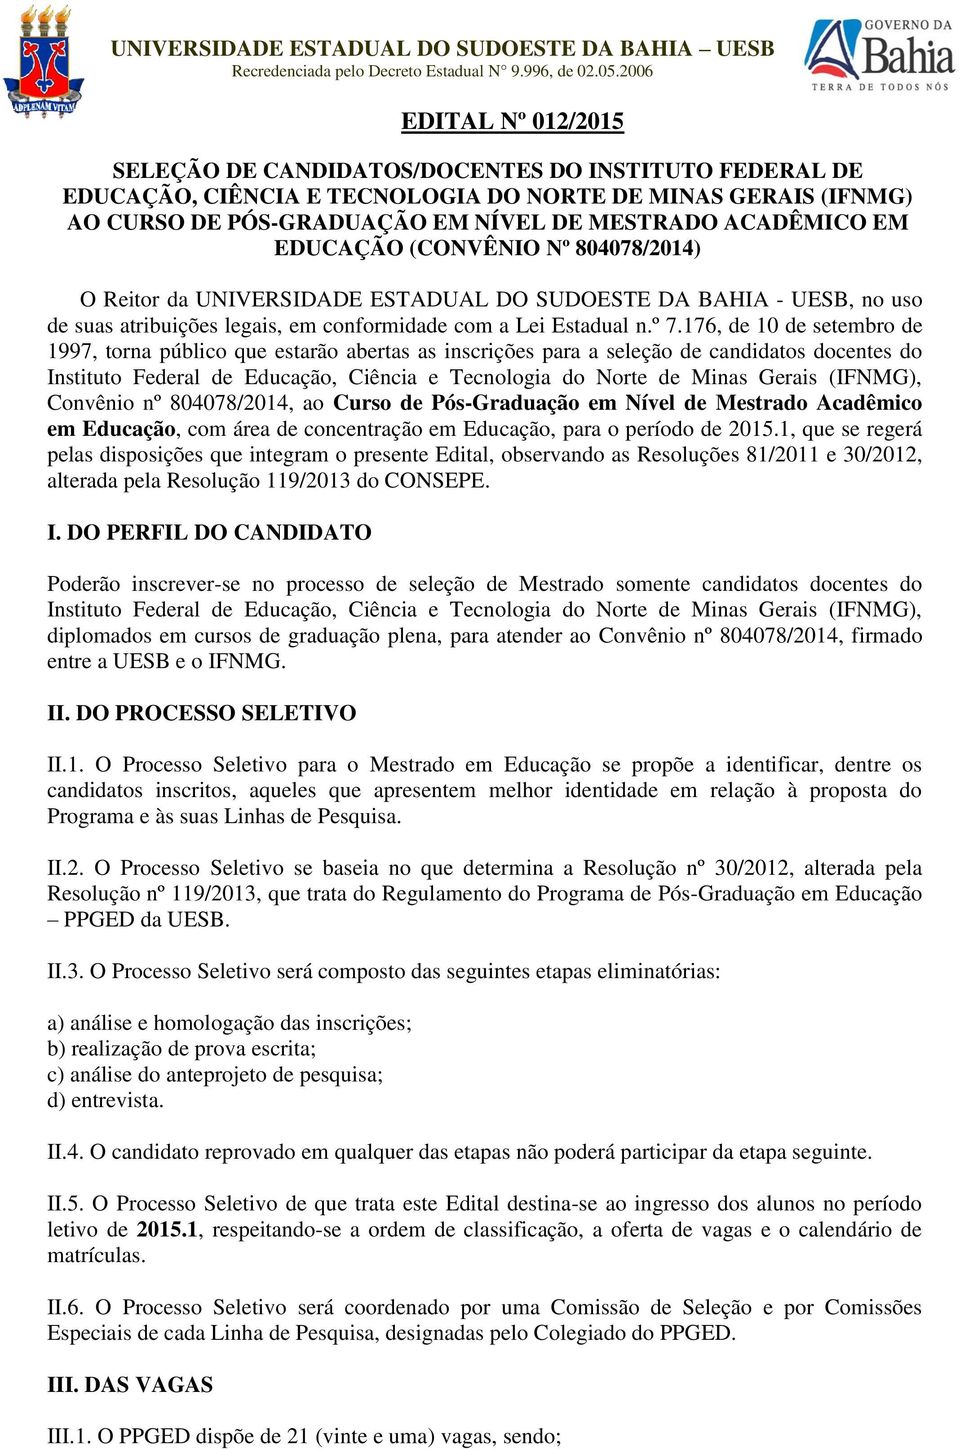 EM EDUCAÇÃO (CONVÊNIO Nº 804078/2014) O Reitor da UNIVERSIDADE ESTADUAL DO SUDOESTE DA BAHIA - UESB, no uso de suas atribuições legais, em conformidade com a Lei Estadual n.º 7.